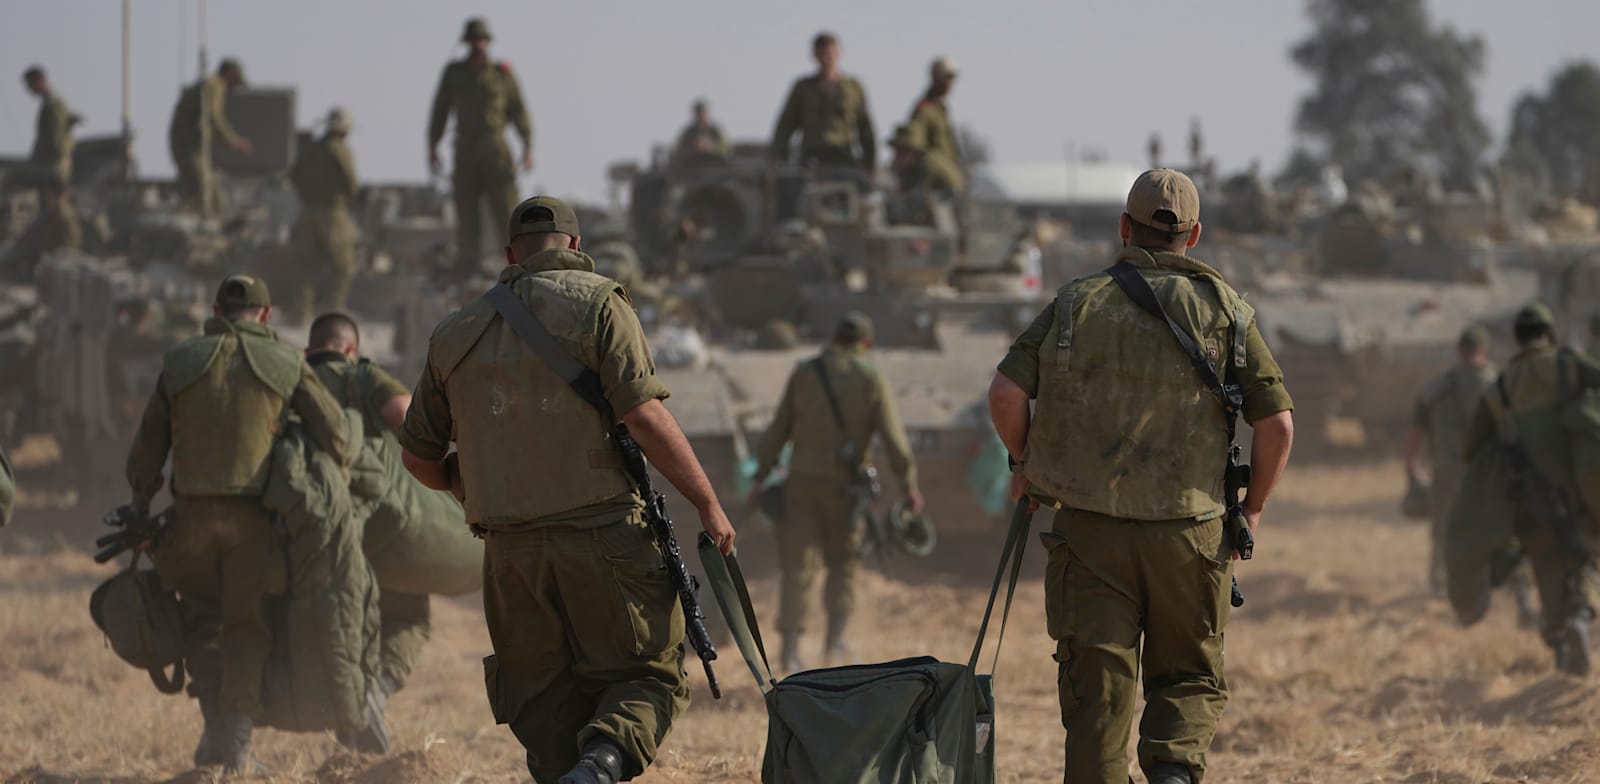 תרומה לא מוכרת: חיילים קונים ציוד, המדינה מערימה קשיים ומסים / צילום: Associated Press, Tsafrir Abayov